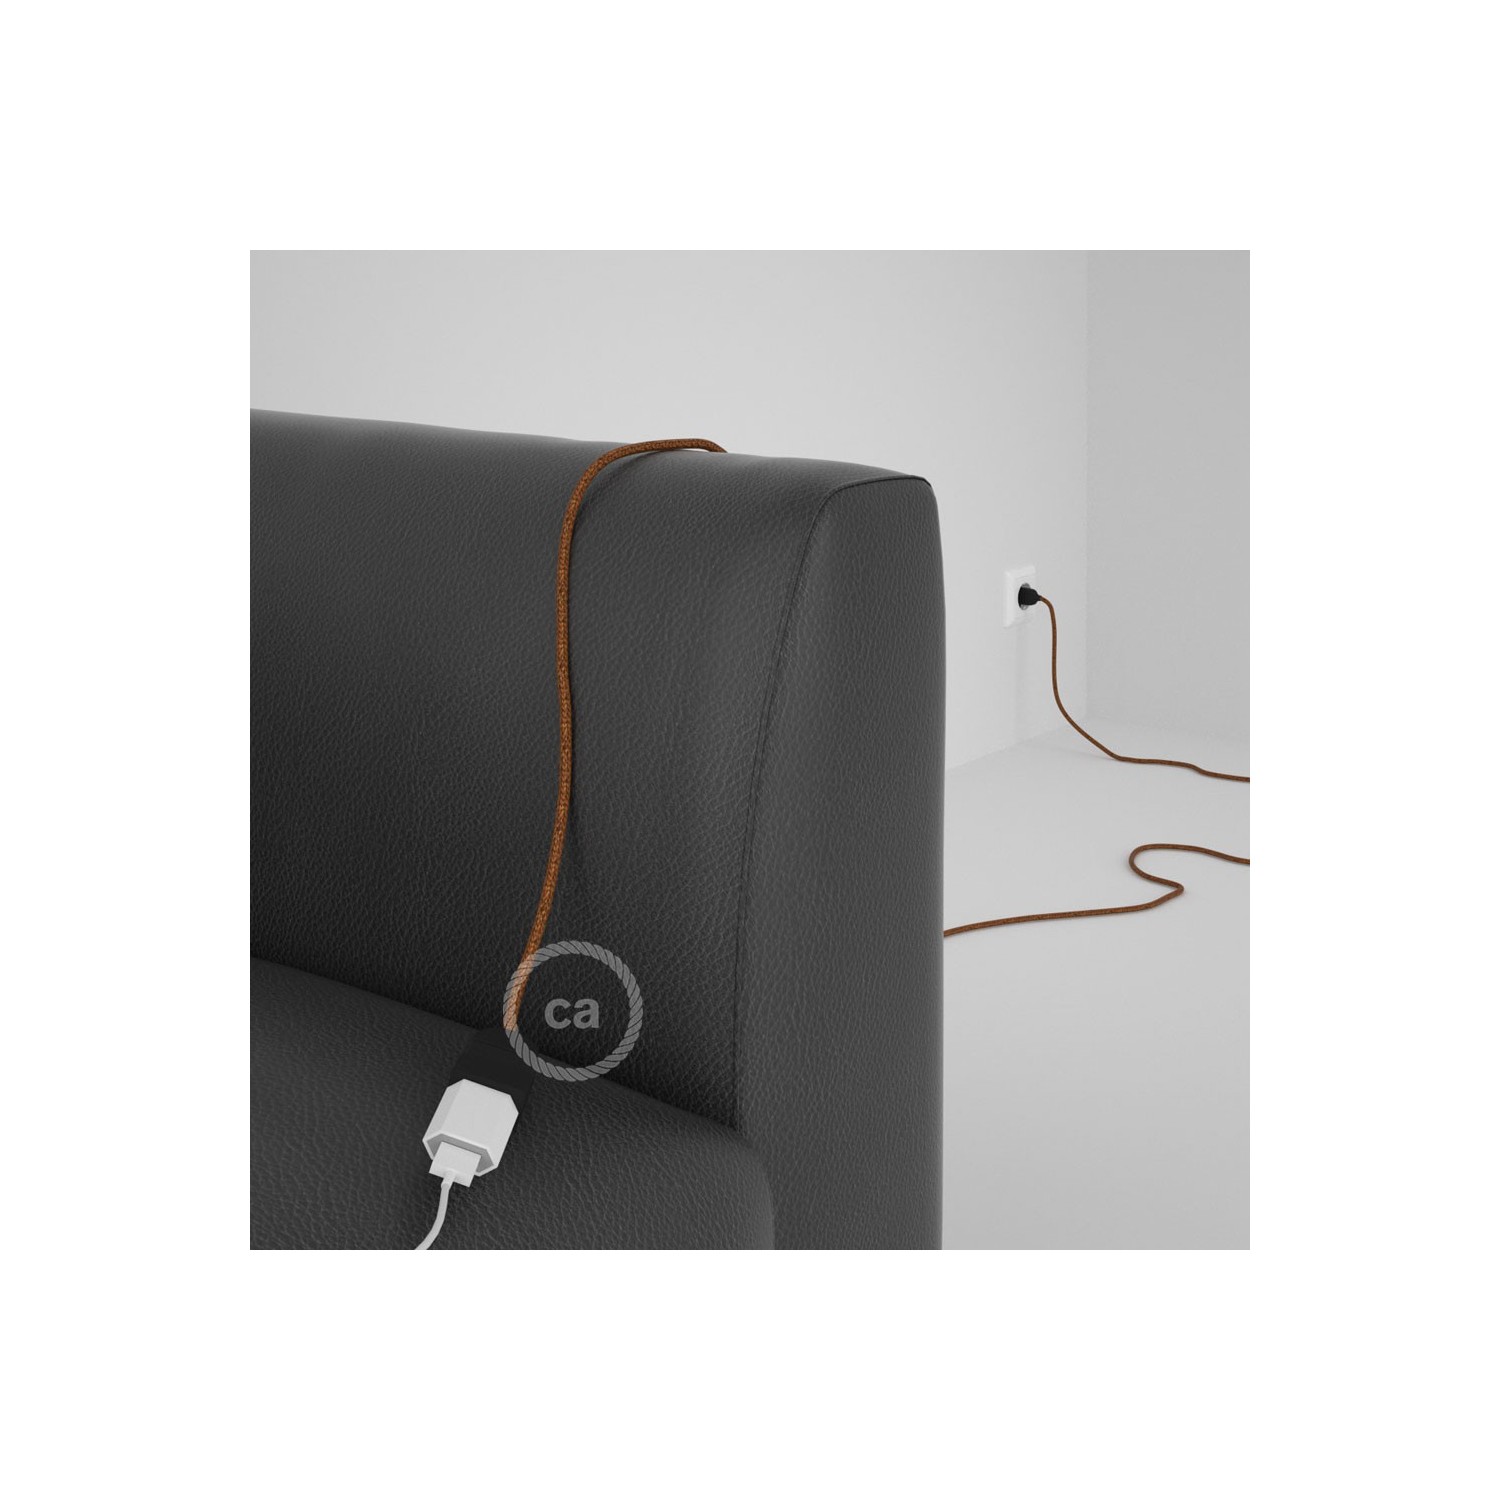 Rallonge électrique avec câble textile RL22 Effet Soie Paillettes Cuivre 2P 10A Made in Italy.